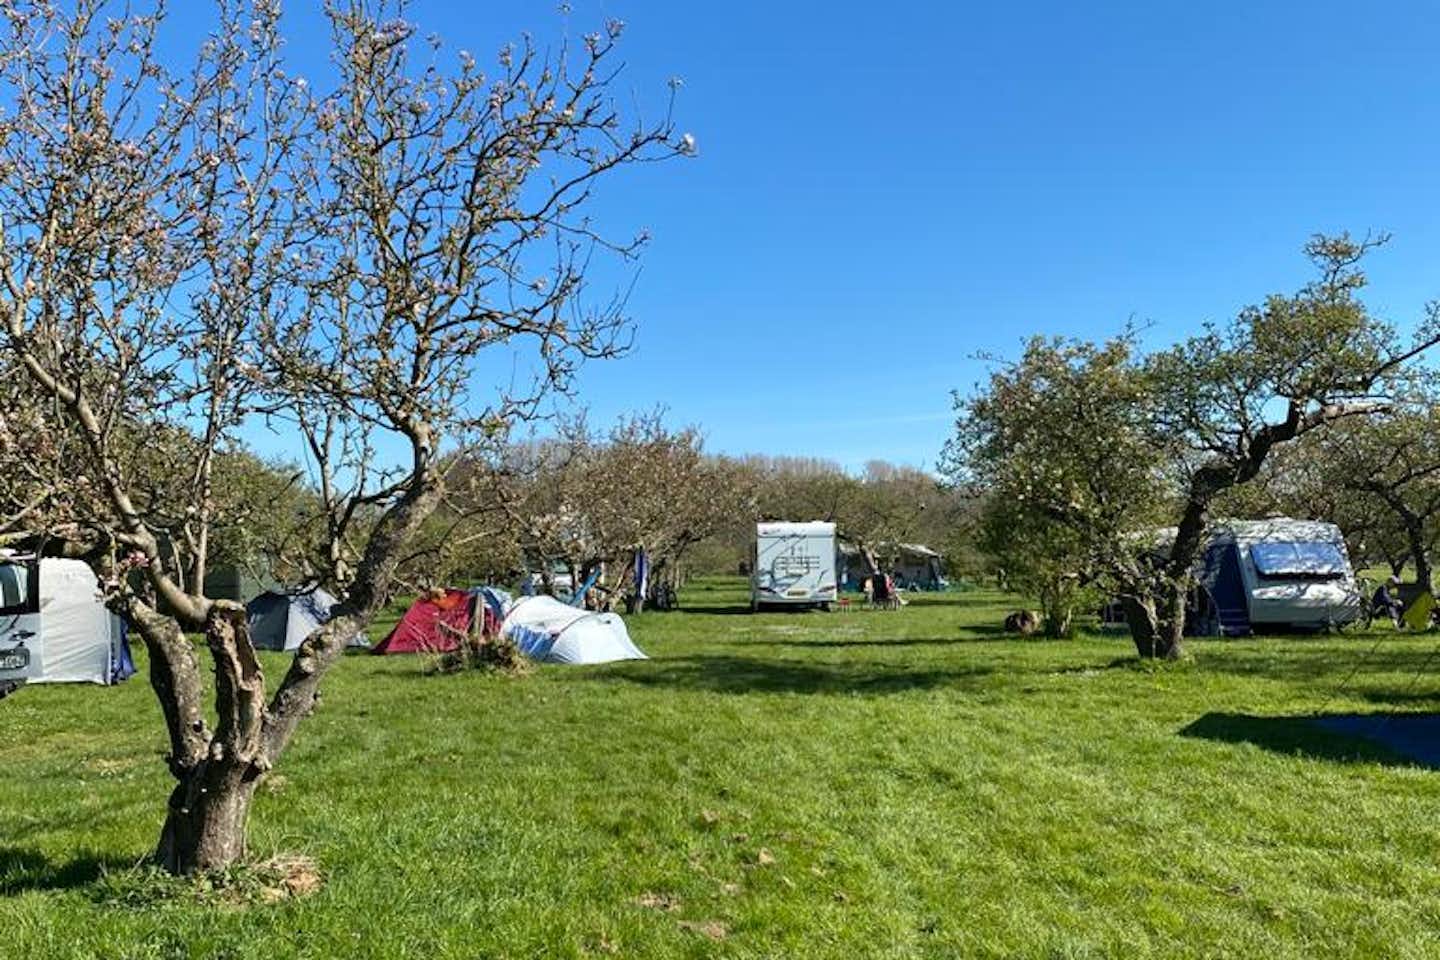 Camping In Het Fruit - Blick auf die Zeltplätze im Grünen